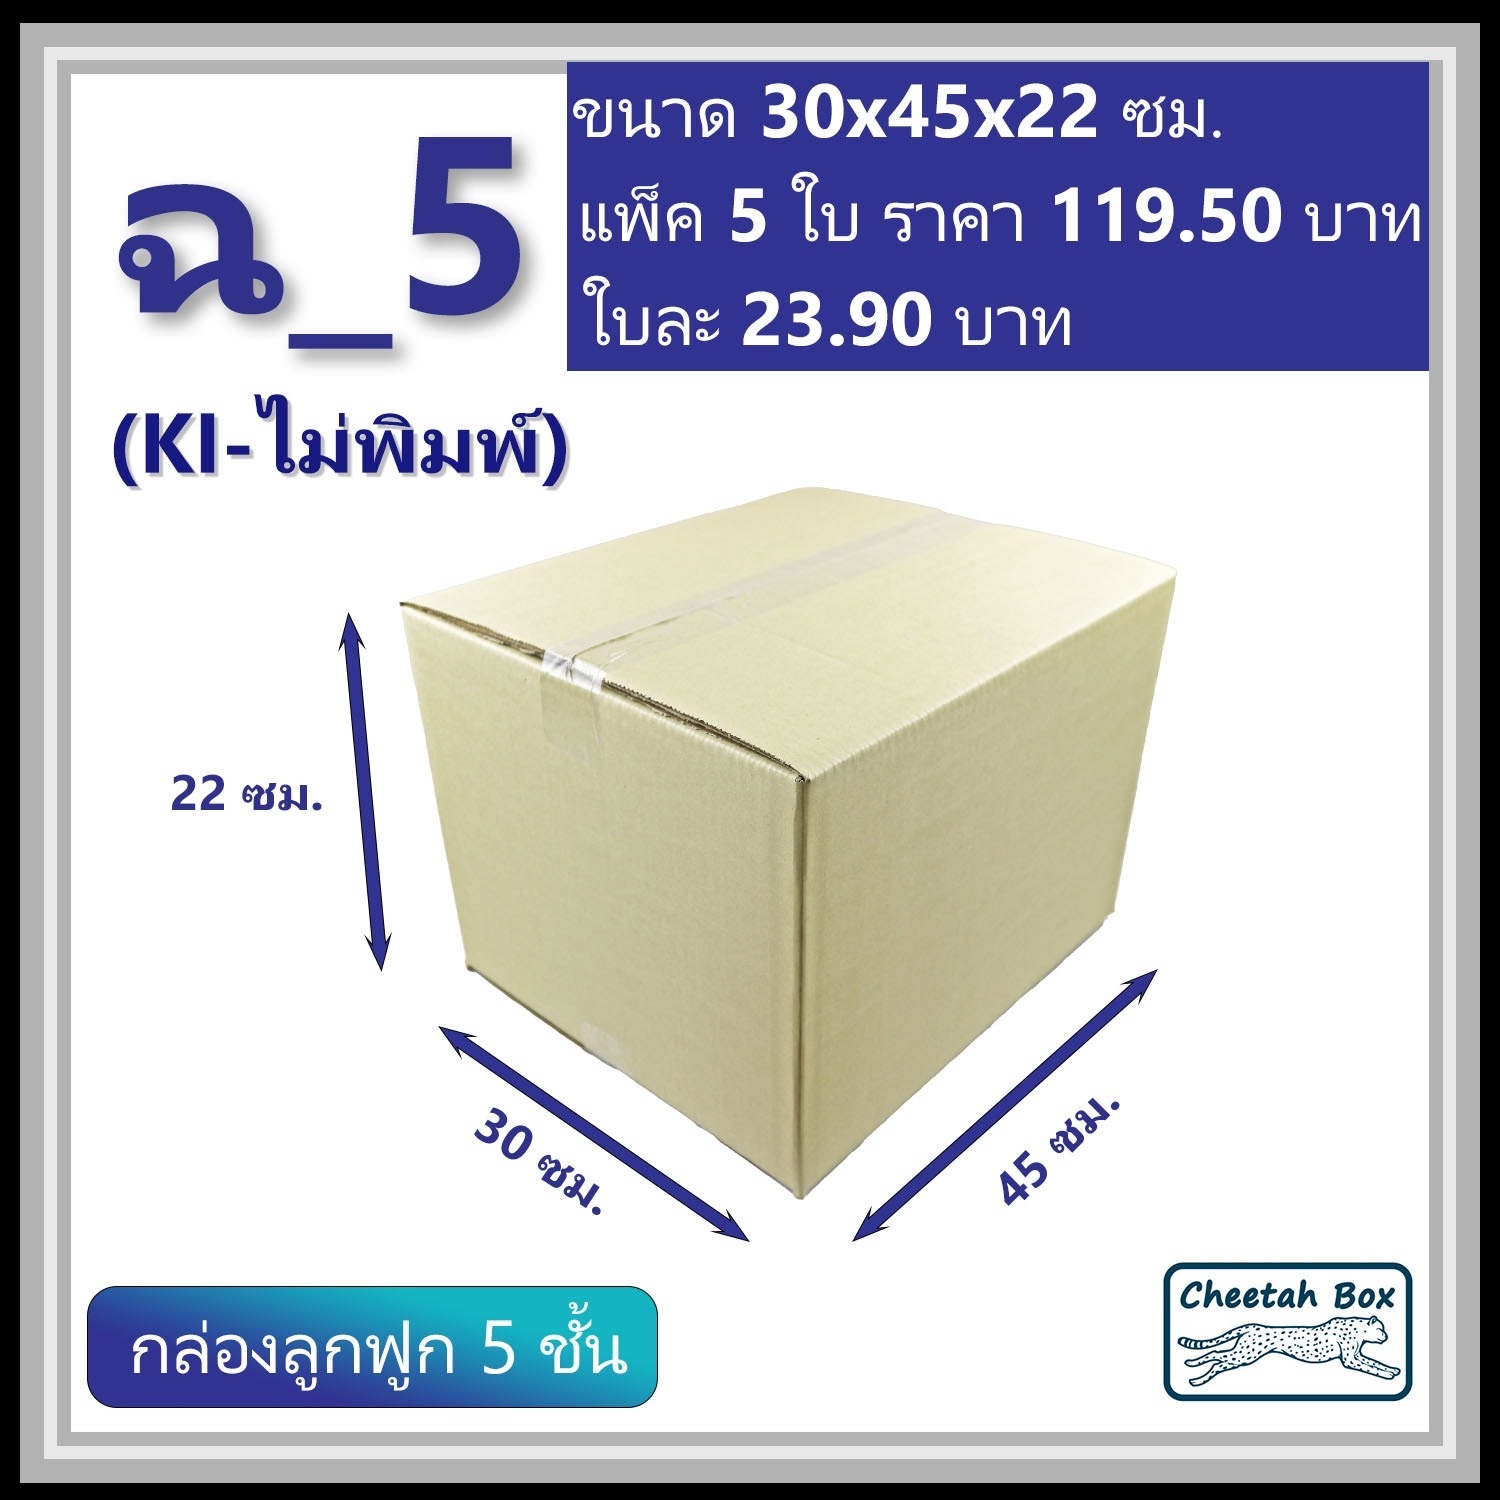 กล่องพัสดุ ฉ_5 ไม่พิมพ์ (Post Box) ลูกฟูก 5 ชั้น ขนาด 30W x 45L x 22H cm.